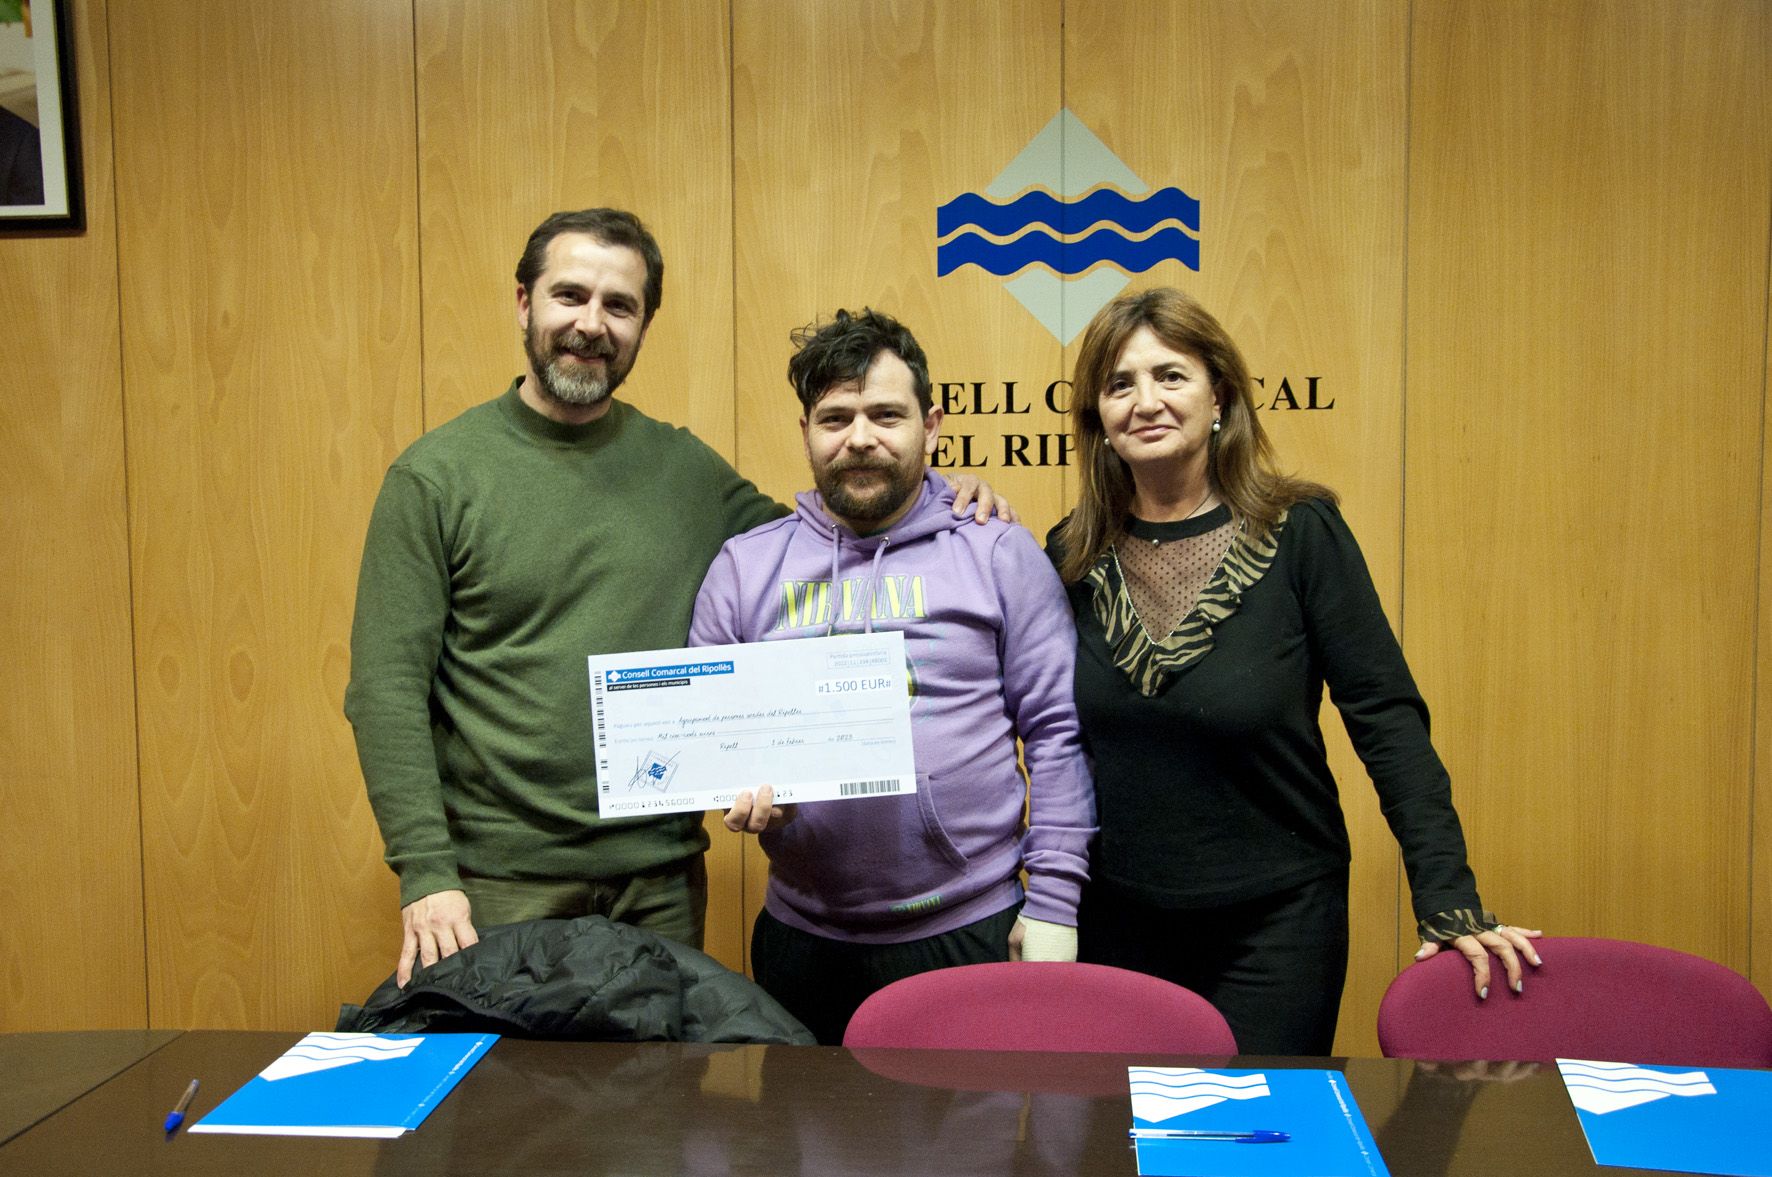 Entrega simbòlica d'un xec de 1.500 euros al president de l'Agrupament de persones sordes del Ripollès per part del president, Joaquim Colomer, i la consellera Dolors Costa.